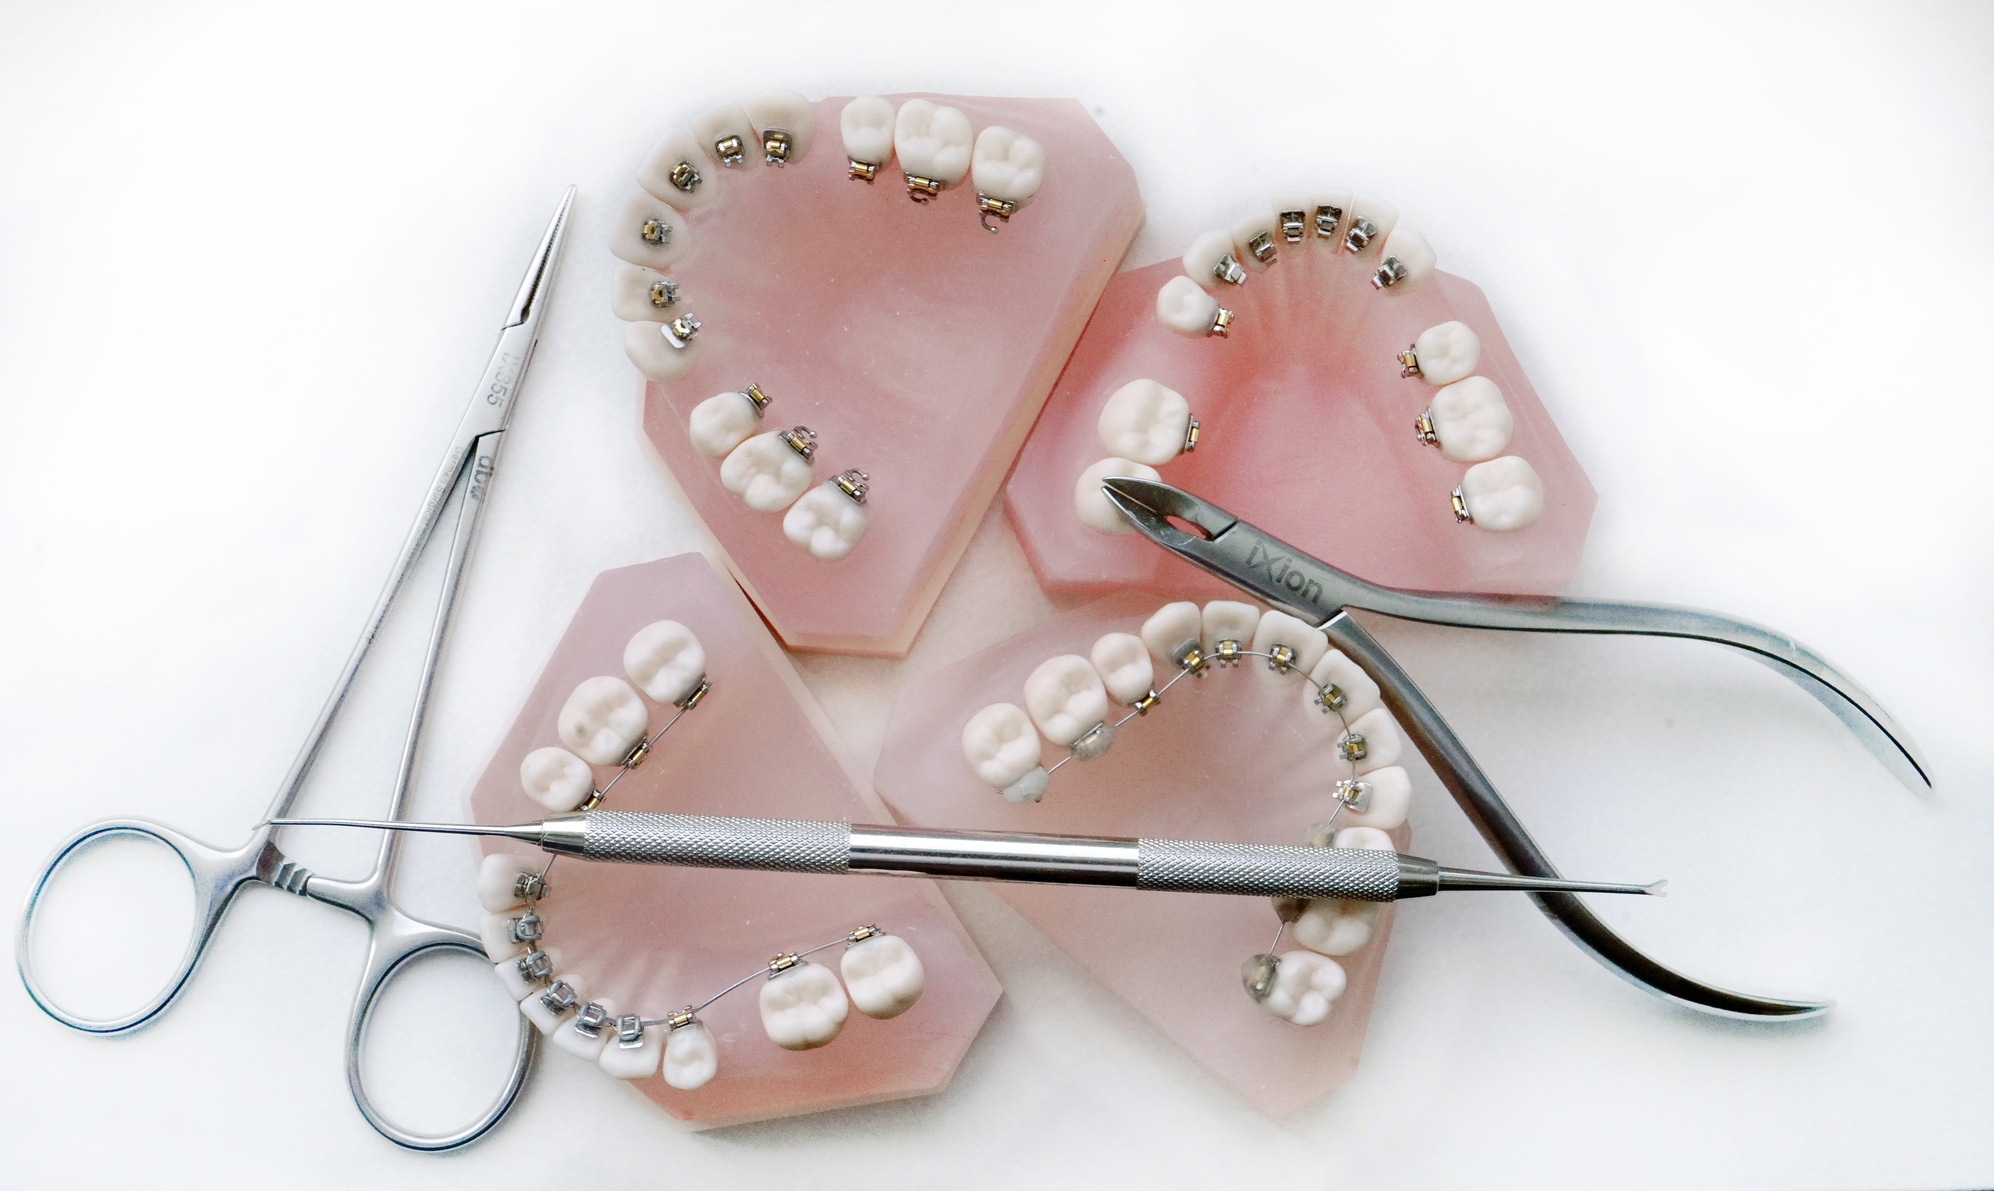 Méthode Pédagogique Formation Orthodontie Linguale - EIOL - Ecole Internationale d'Orthodontie Linguale